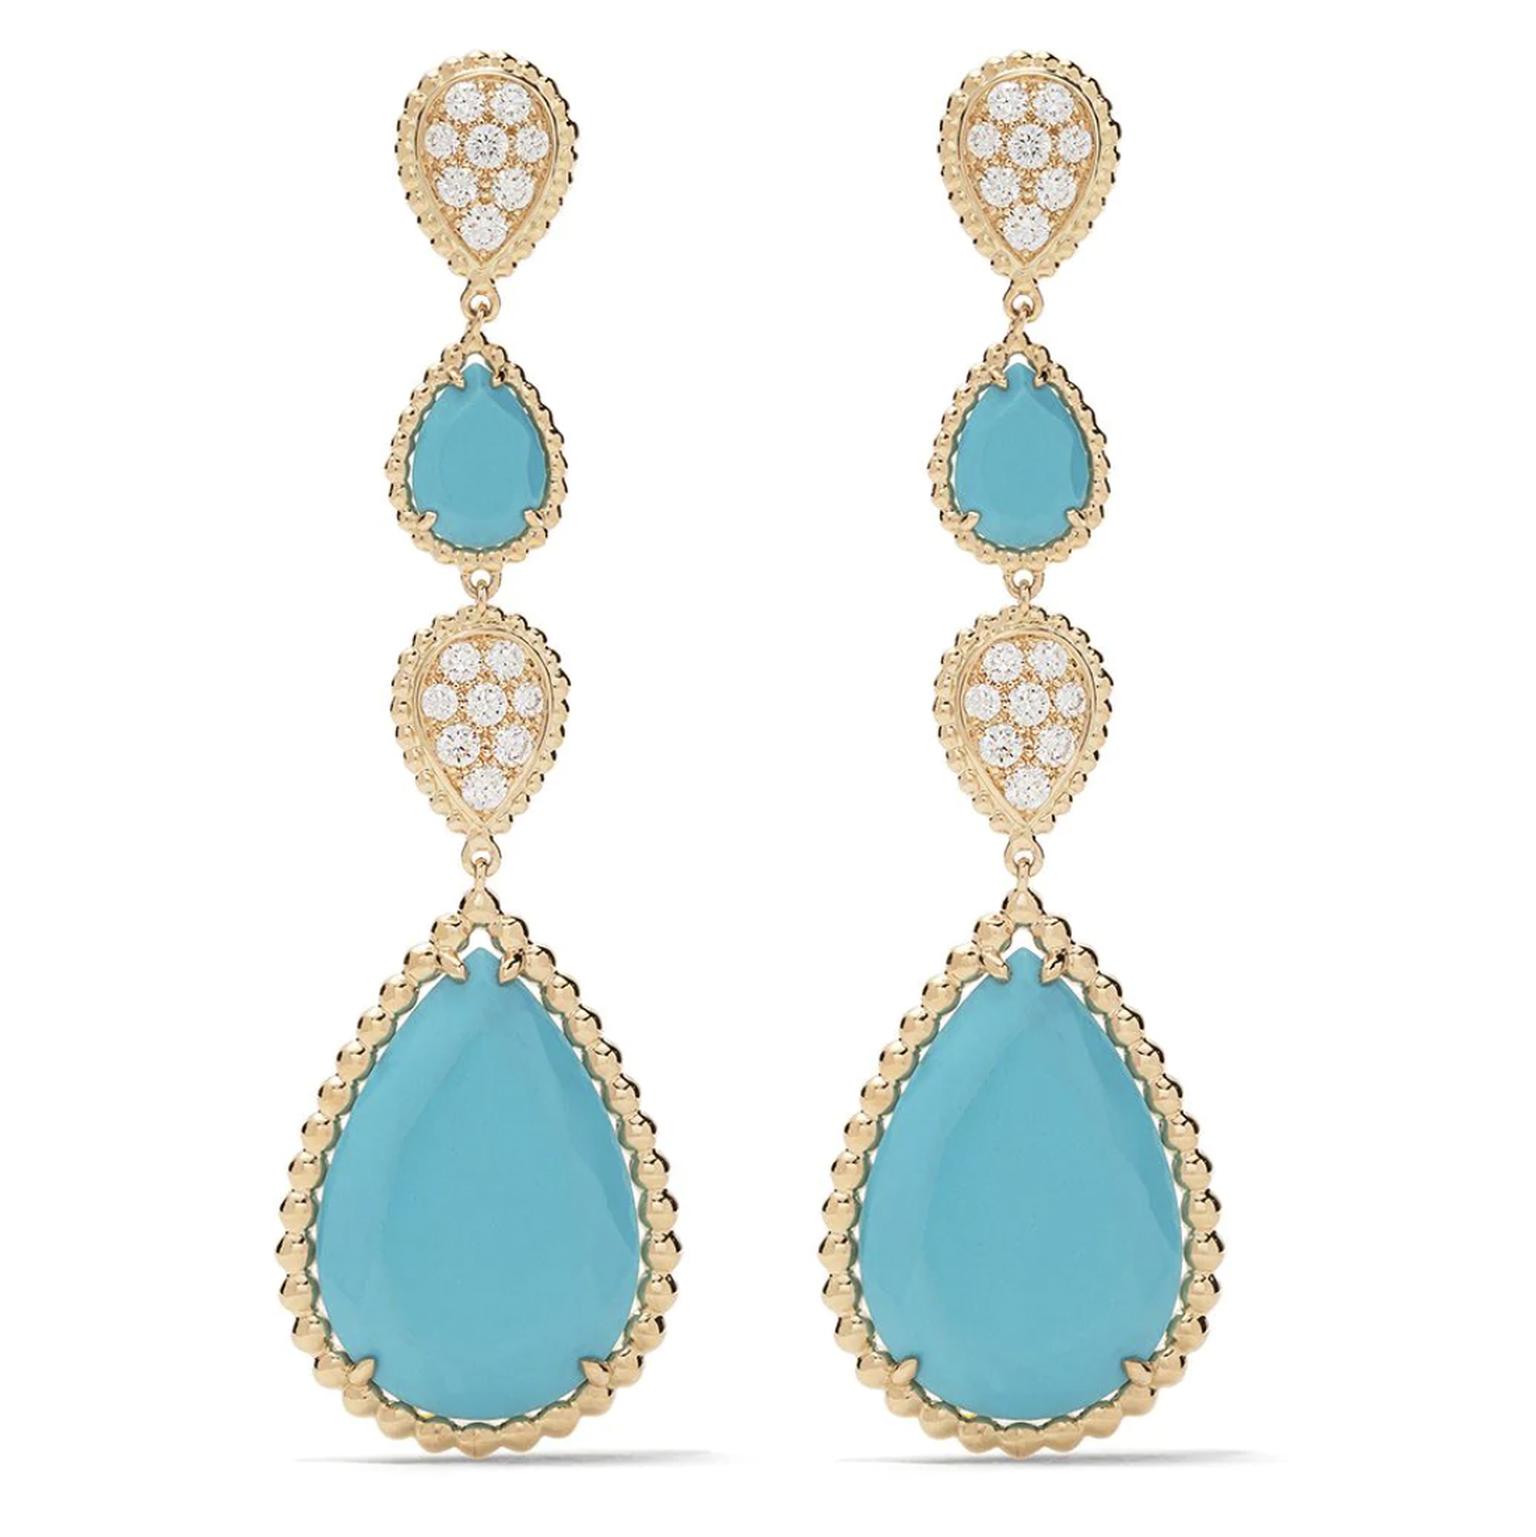 Turquoise earrings by Boucheron